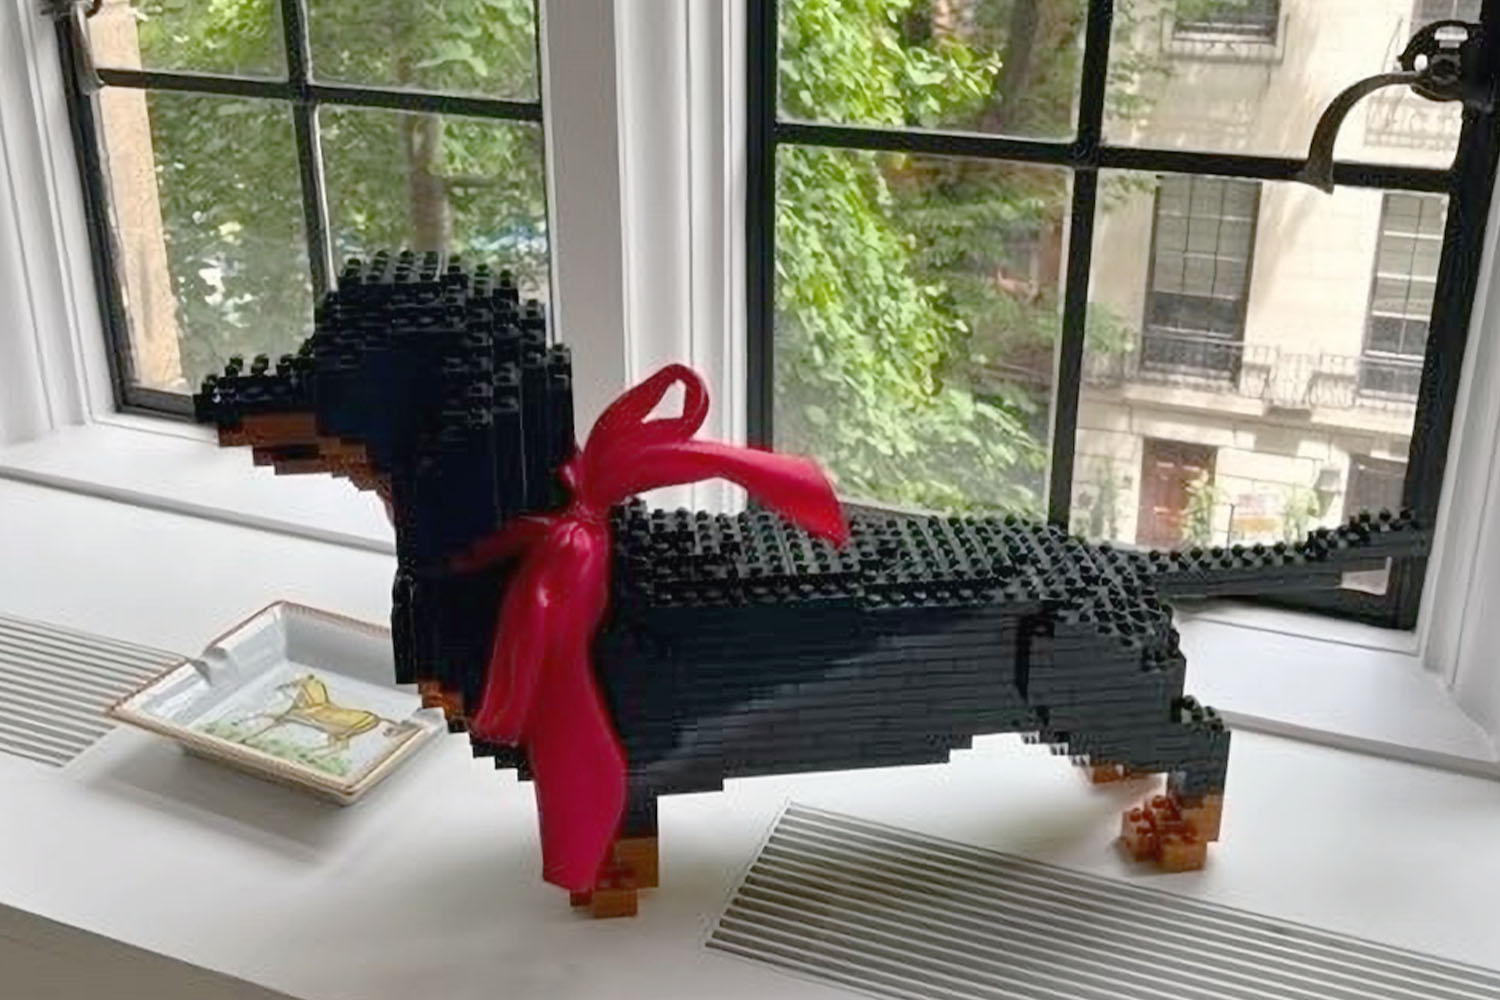 A Lego version of Derek's dog